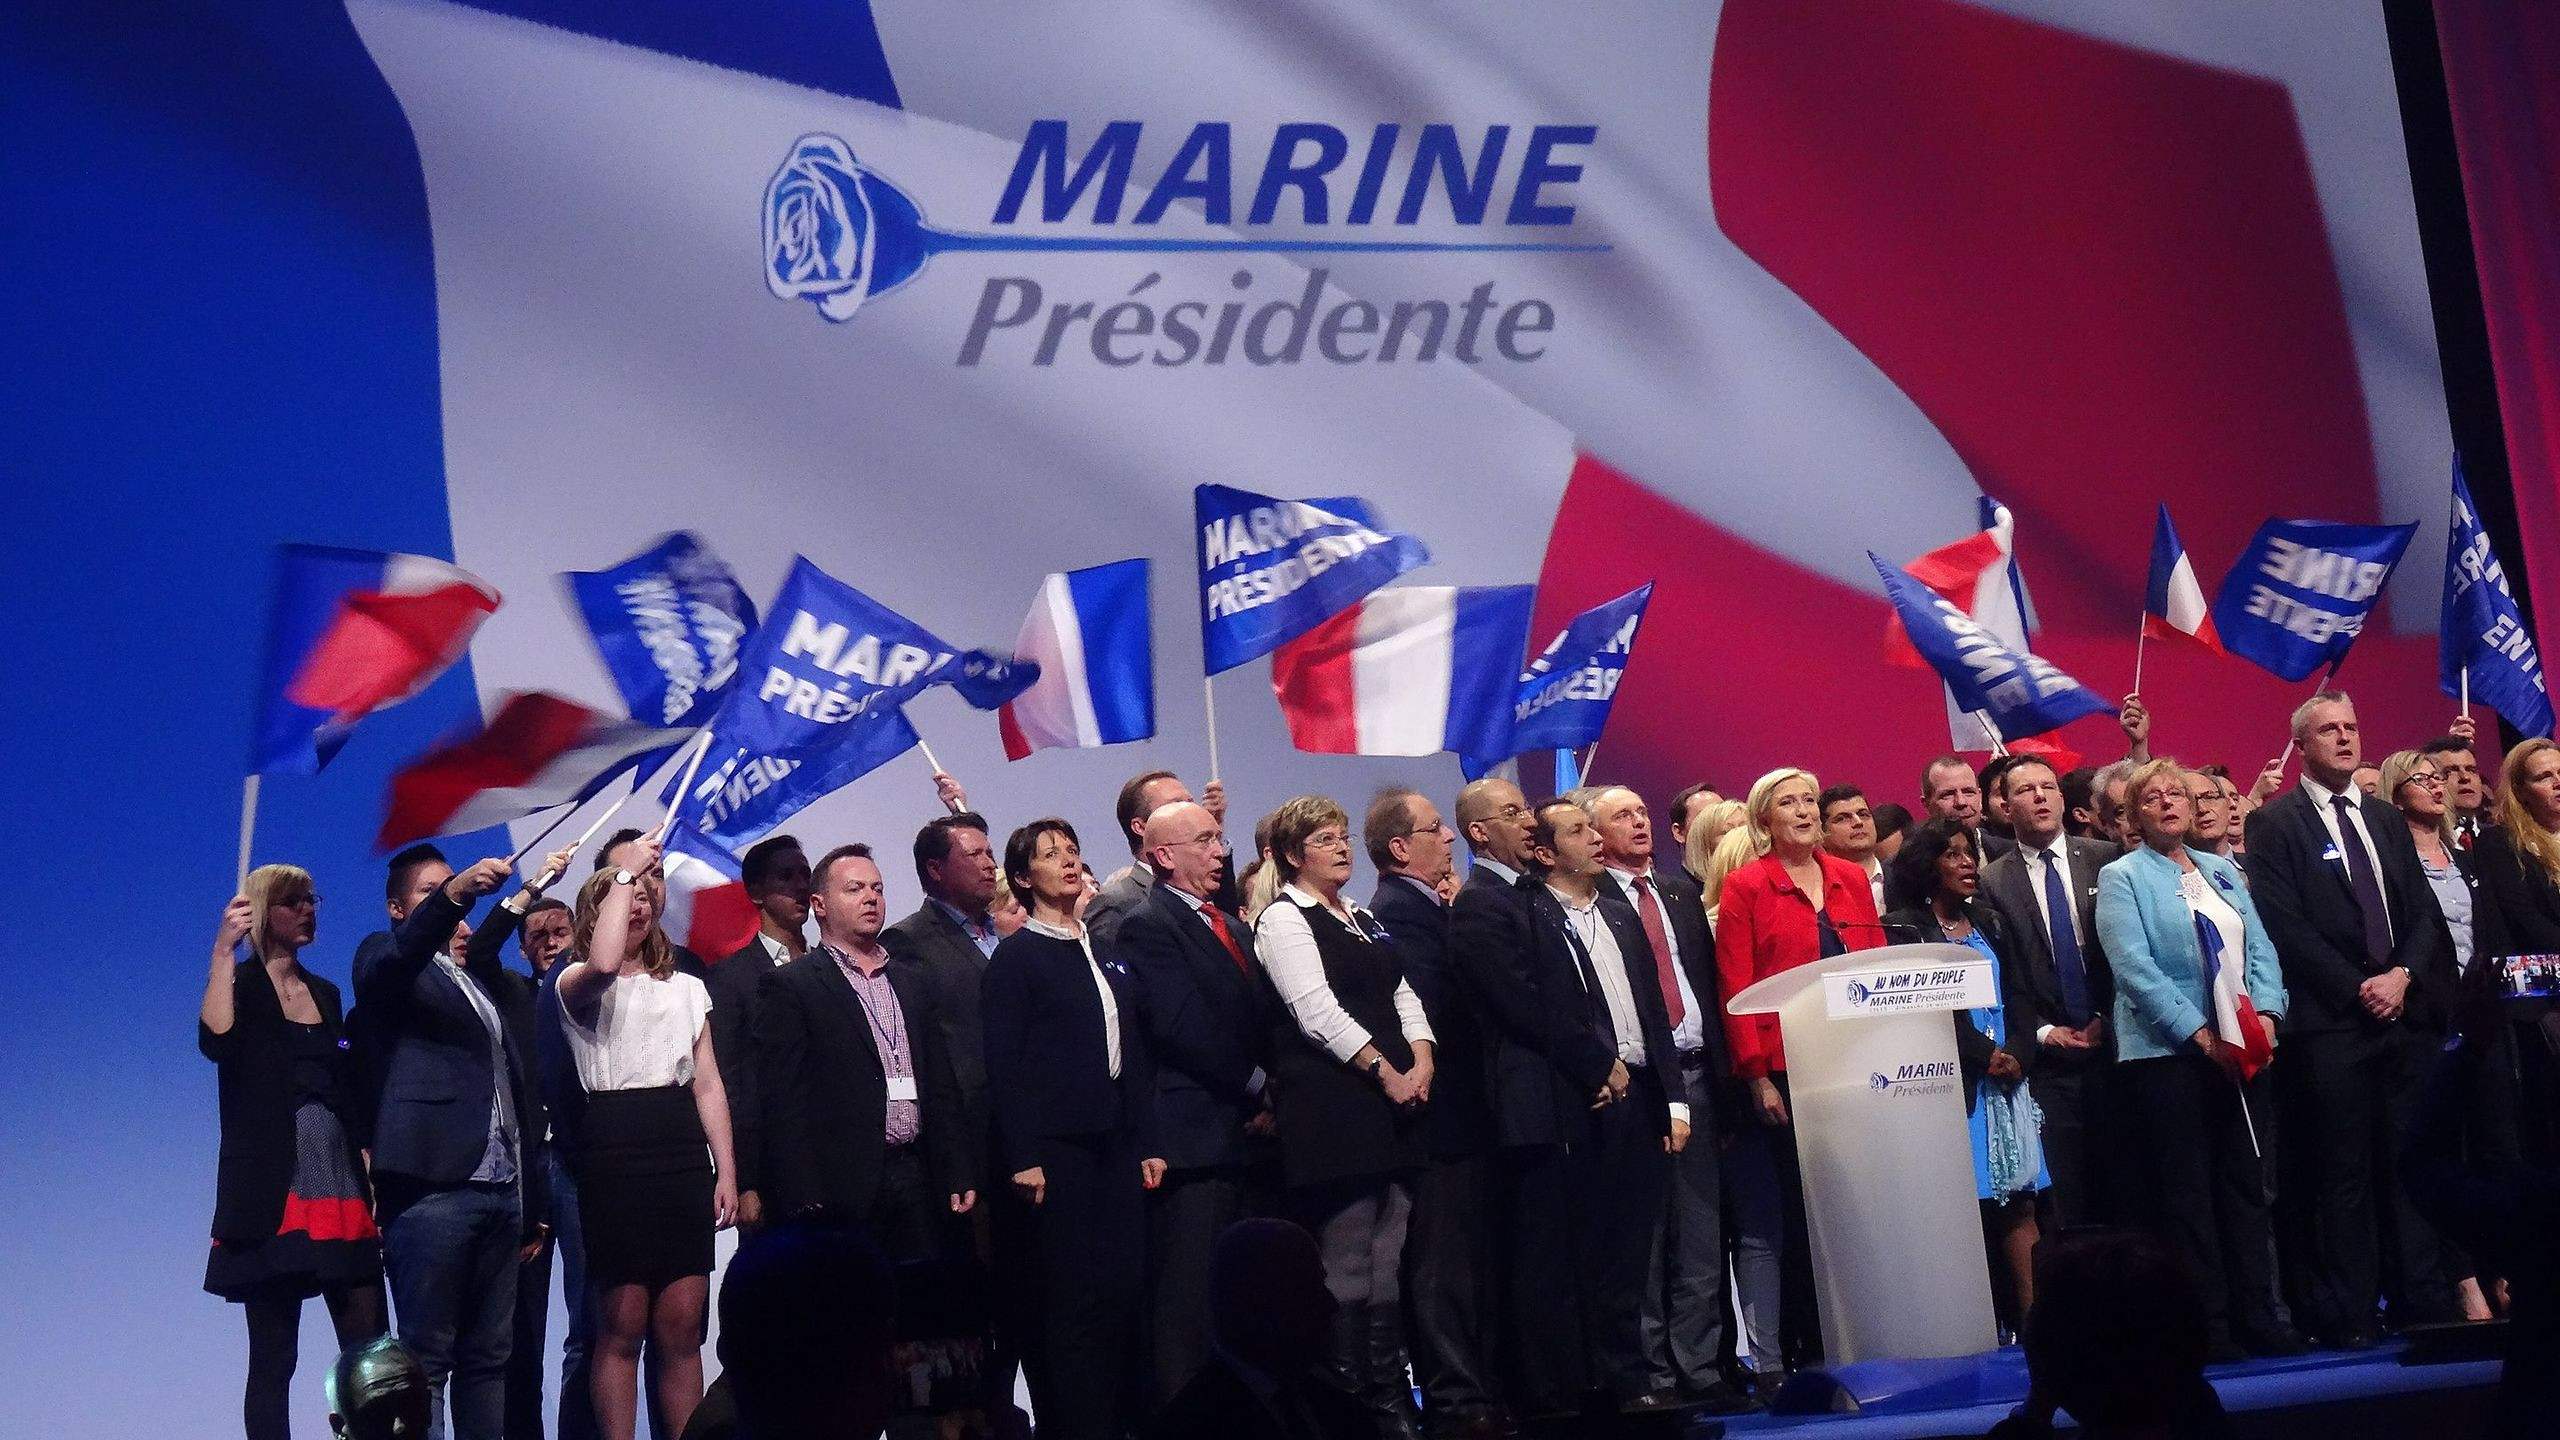 Marine Le Pen en partijleden van RN tijdens een campagnebijeenkomst voor de Franse pre-sidentsverkiezingen op 26 maart 2017. © Prachatai via Flickr.